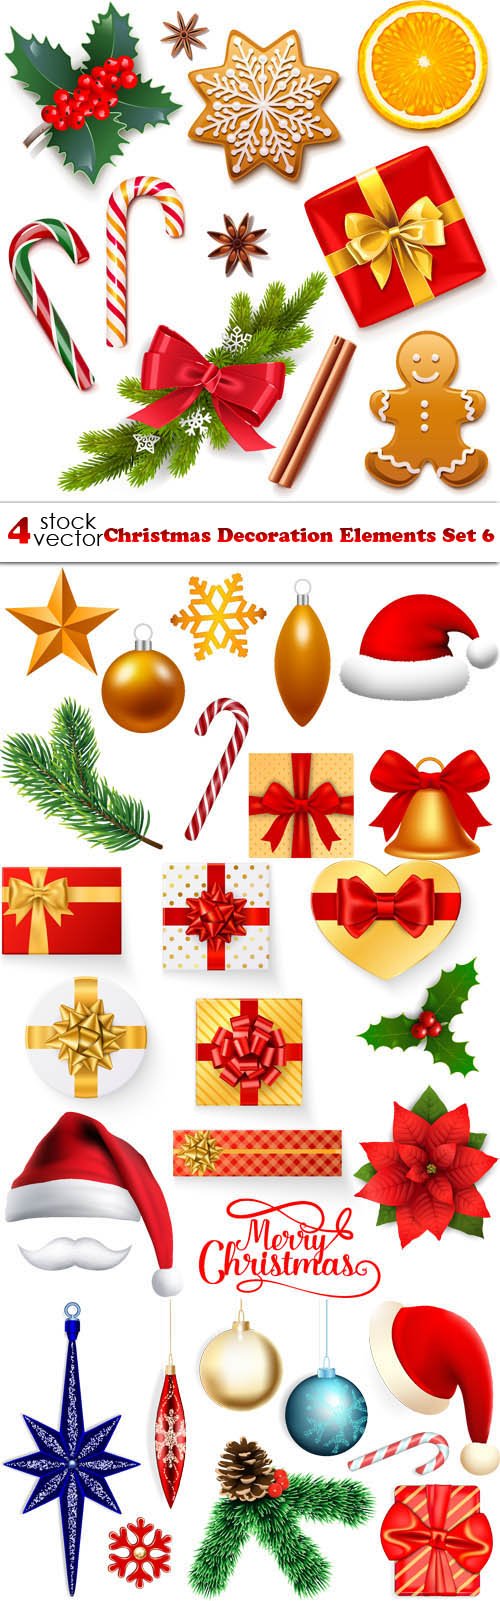 Vectors - Christmas Decoration Elements Set 6